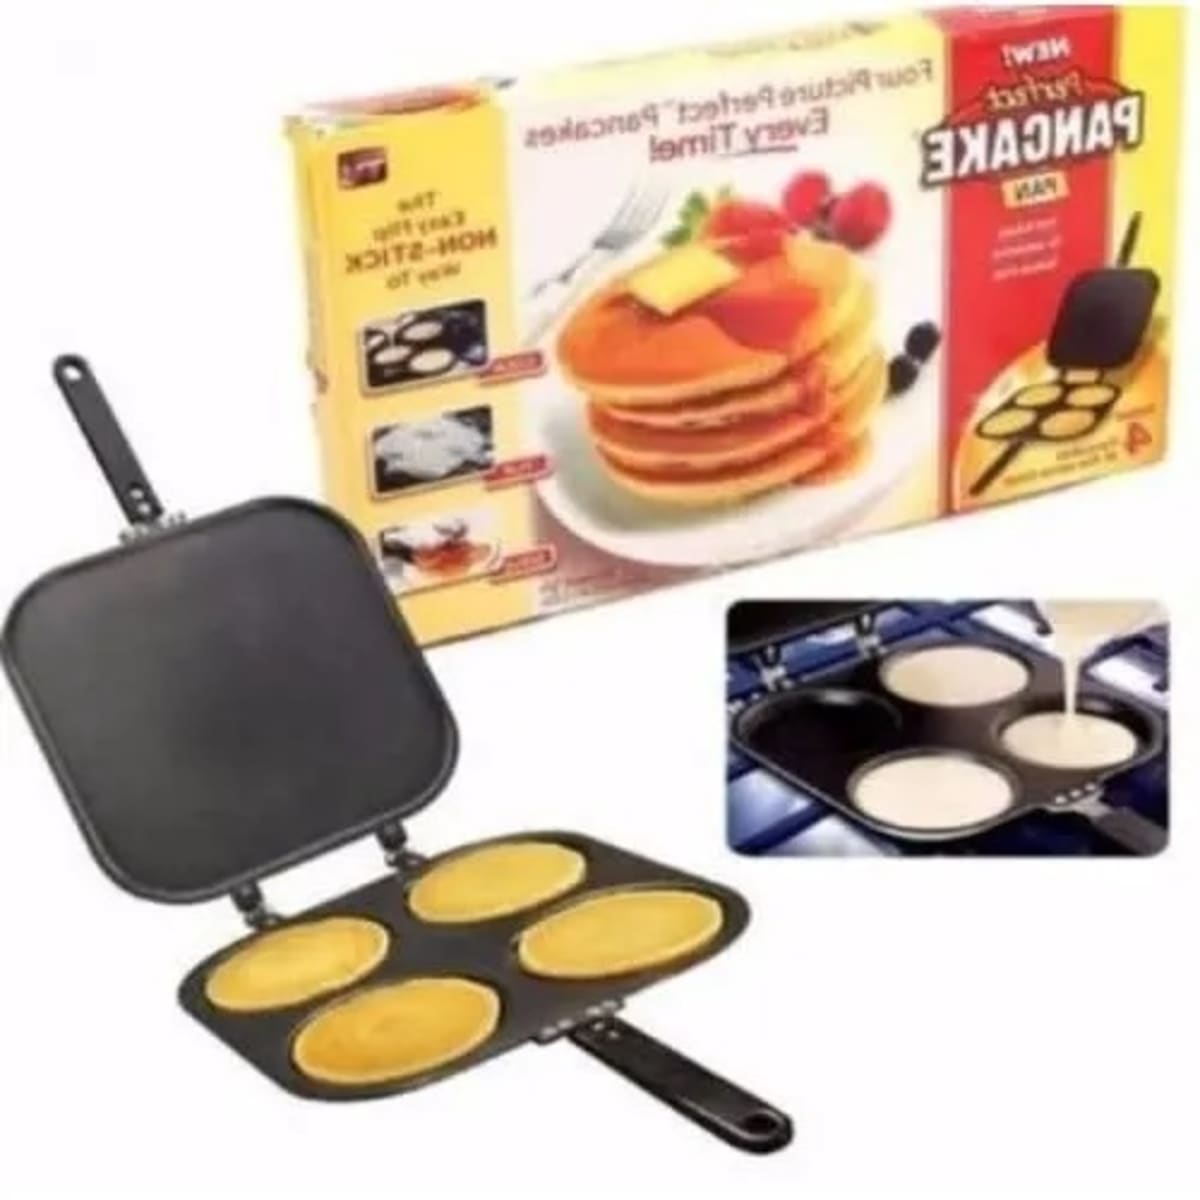 Perfect Pancake Pan 4 Division #Pancake #PerfectPancake #PancakeMaker  #Breakfast #Moosasdiscount